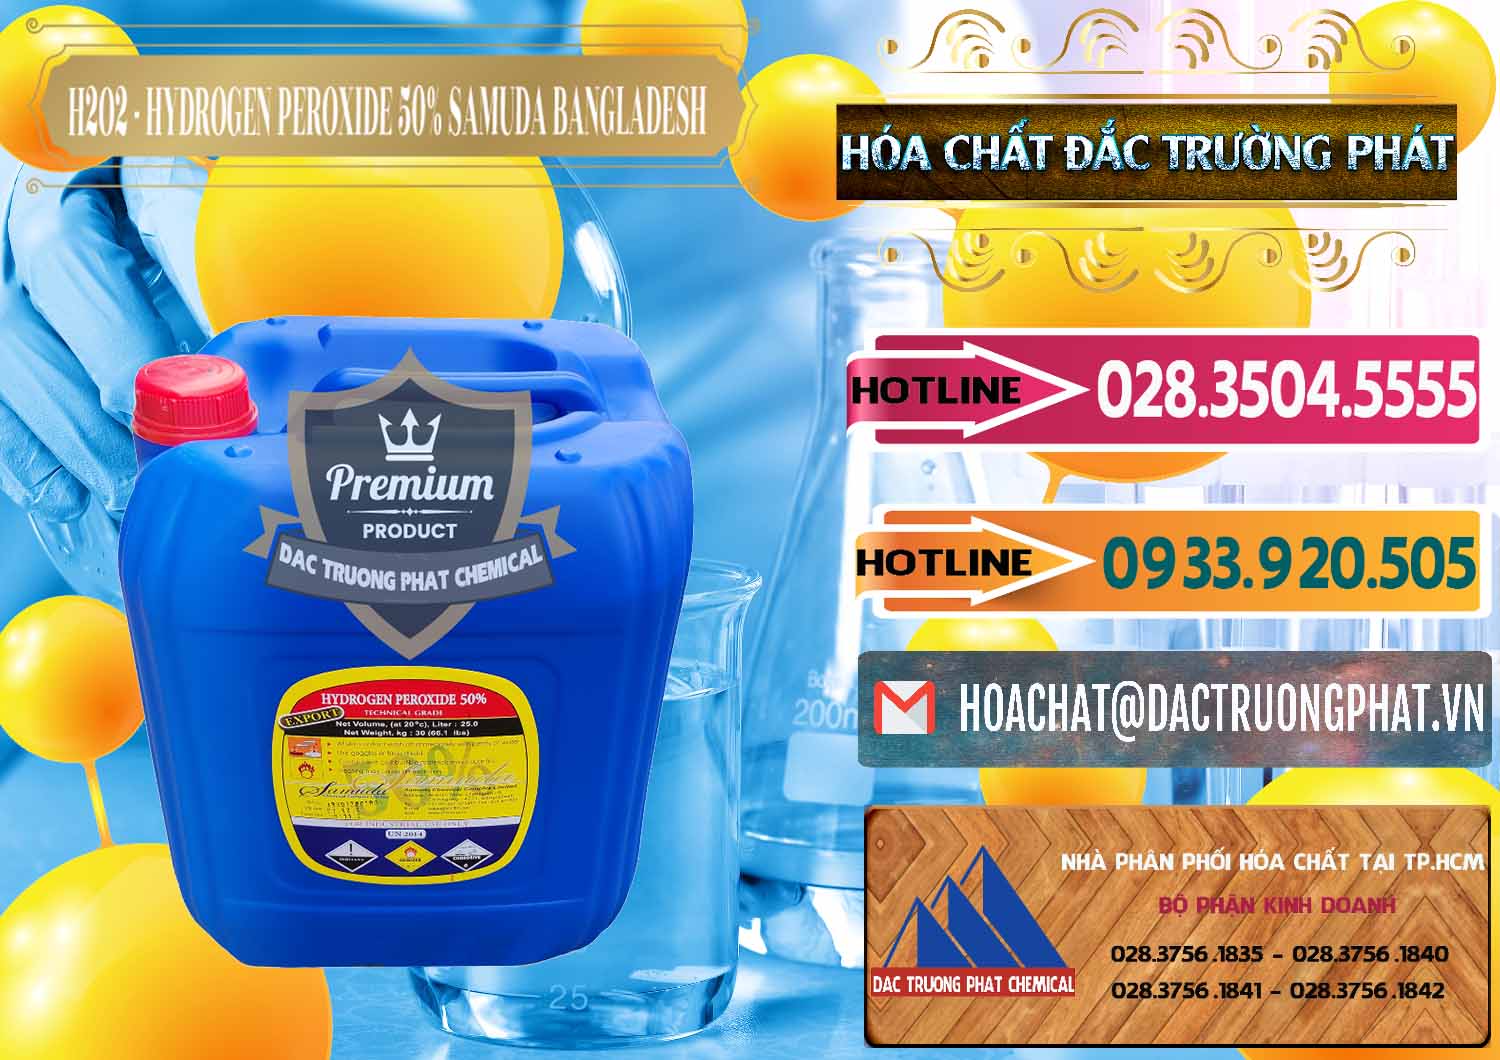 Cty chuyên cung ứng ( bán ) H2O2 - Hydrogen Peroxide 50% Samuda Bangladesh - 0077 - Công ty chuyên phân phối ( bán ) hóa chất tại TP.HCM - dactruongphat.vn